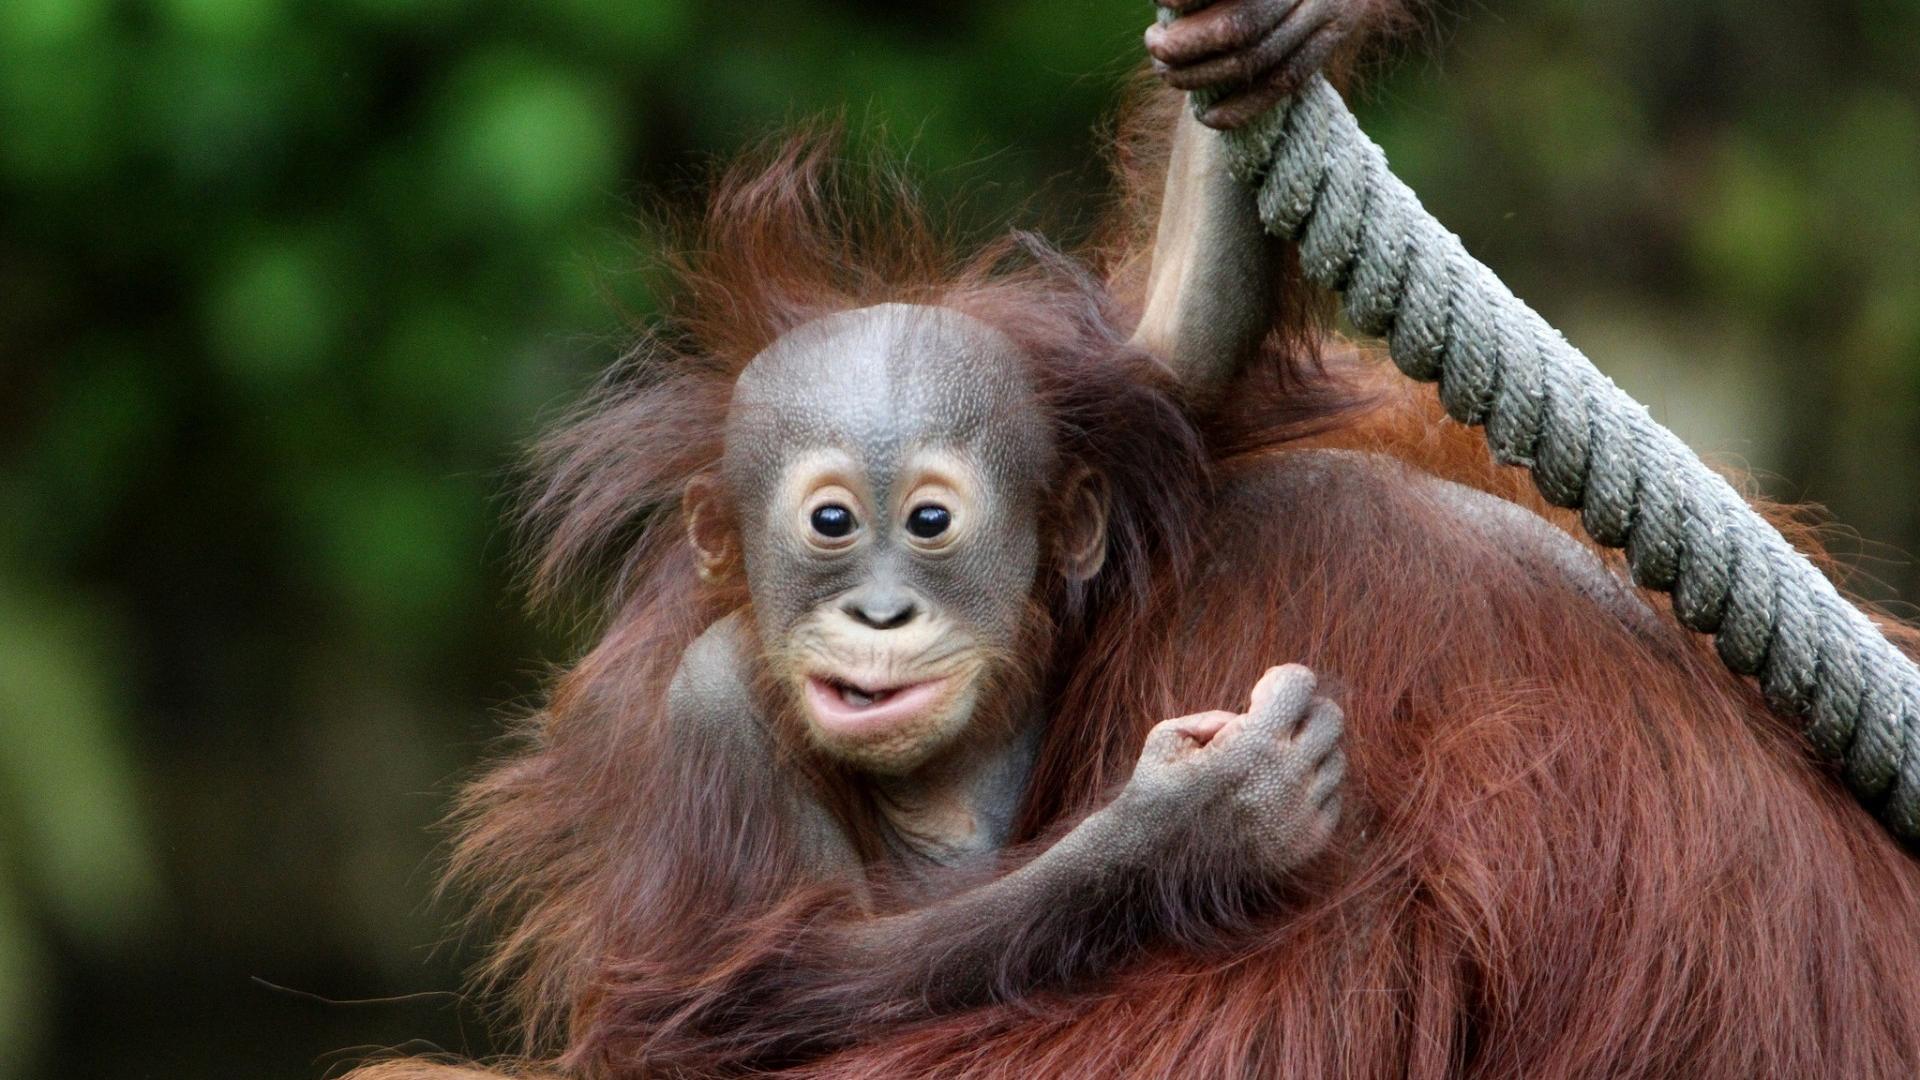 Baby Orangutan Wallpaper Image Pictures Becuo